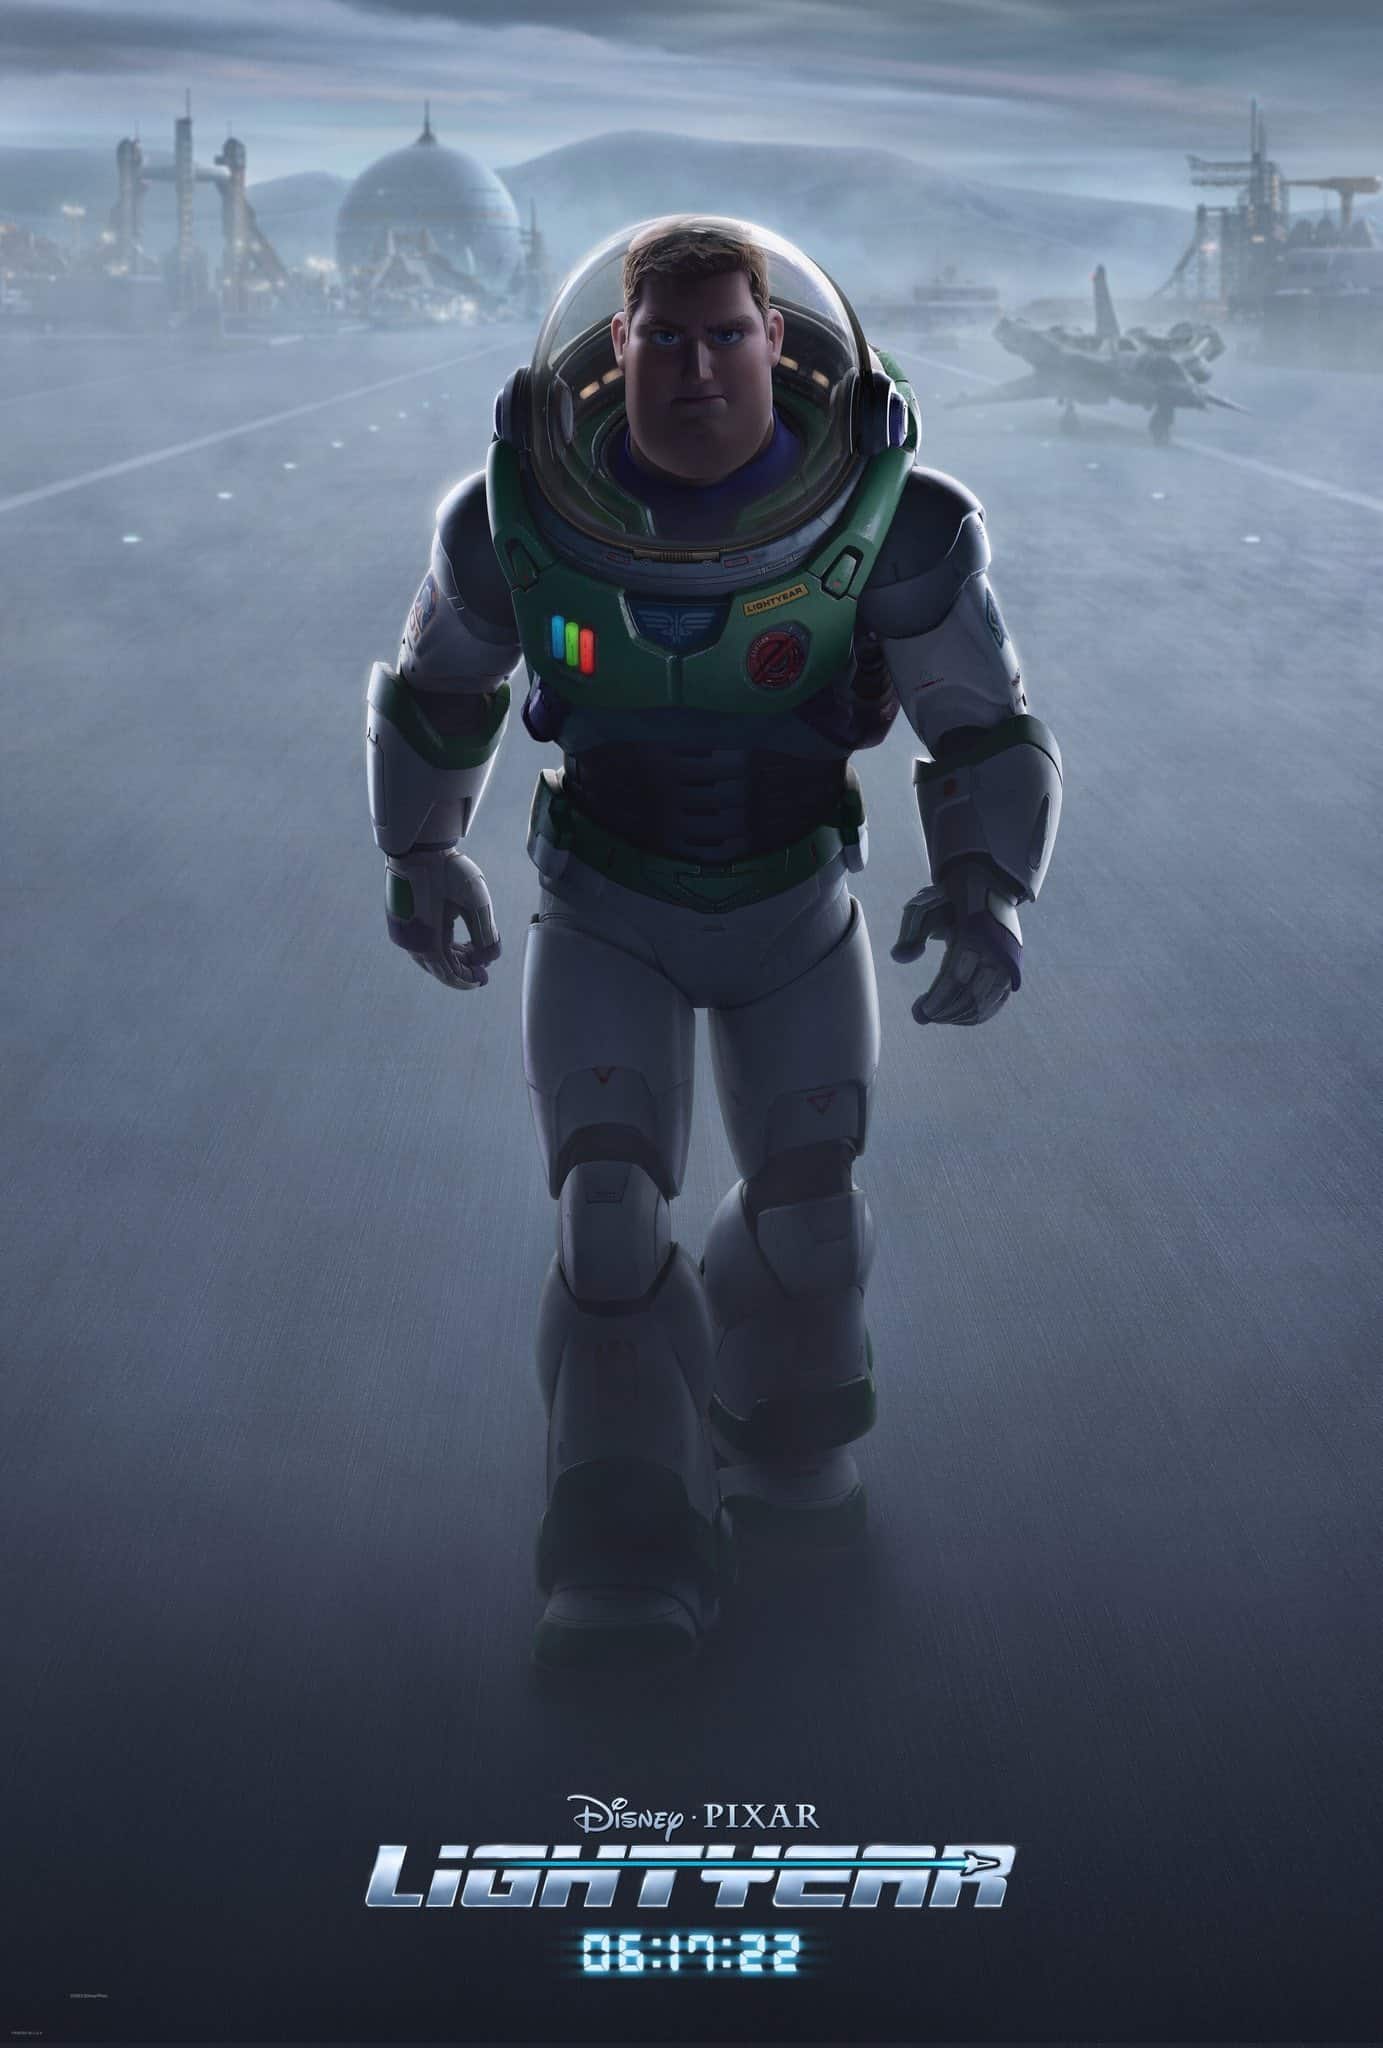 Lightyear-Poster Lightyear: Pixar libera trailer que revela novo Zurg e adições ao elenco; confira!